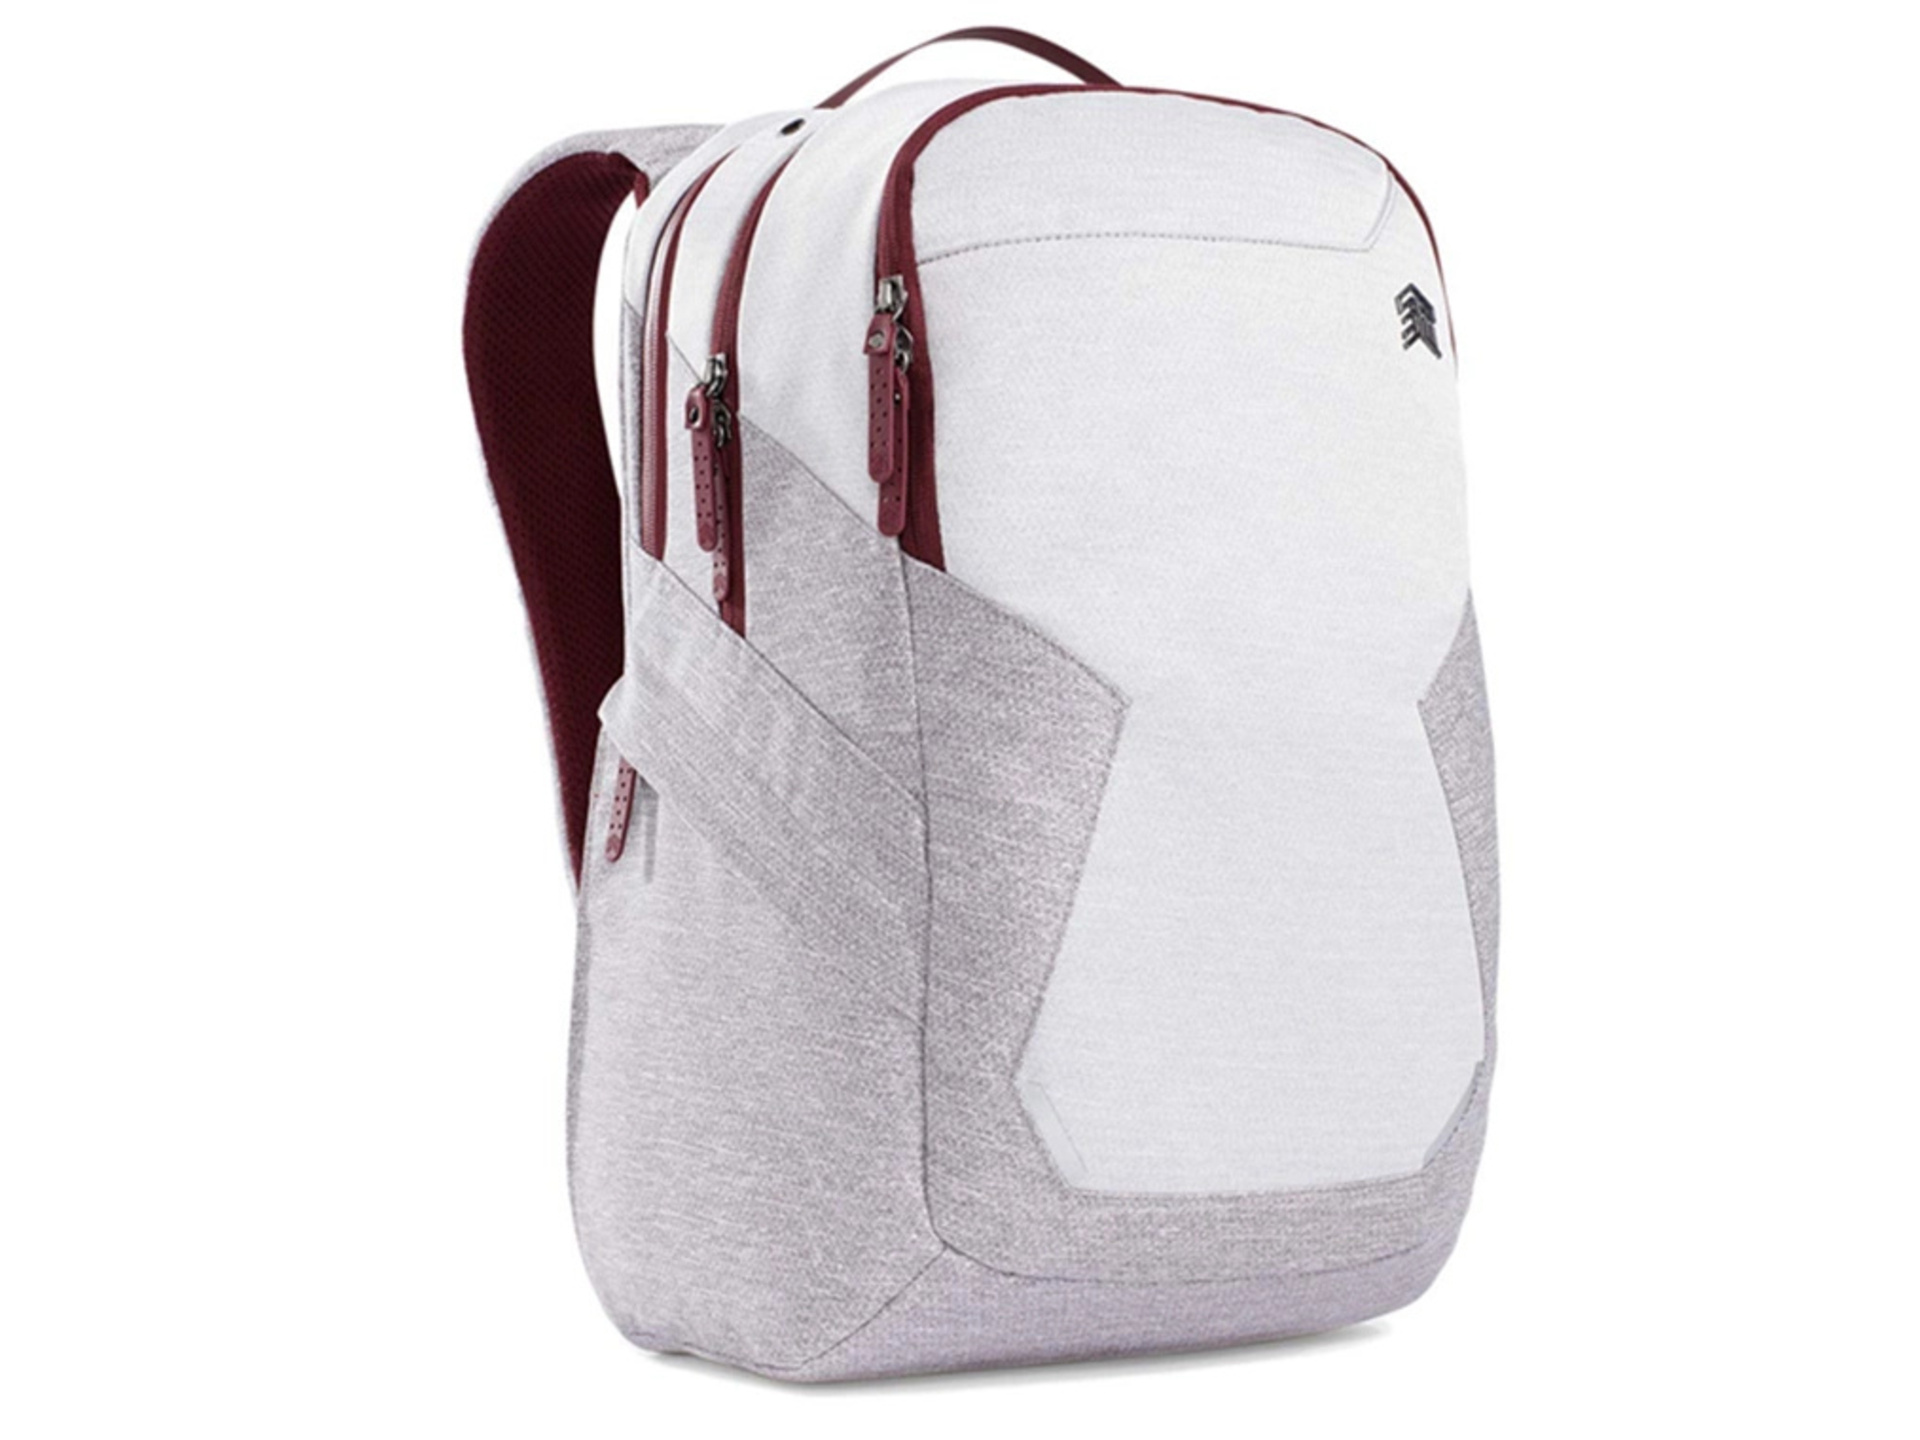 STM Myth 28L Backpack (Windsor Wine)